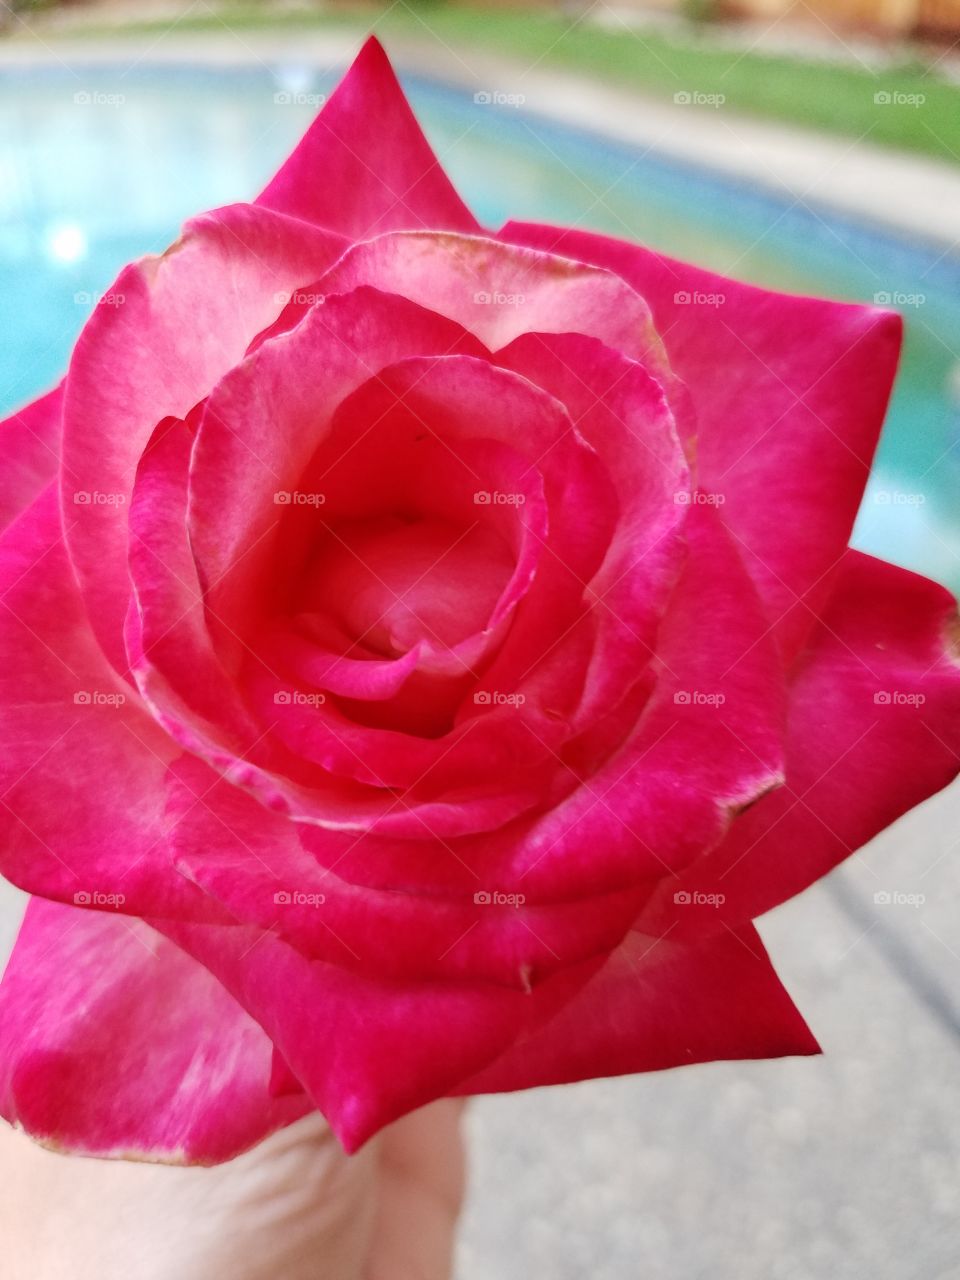 My rose! Vetrans honor